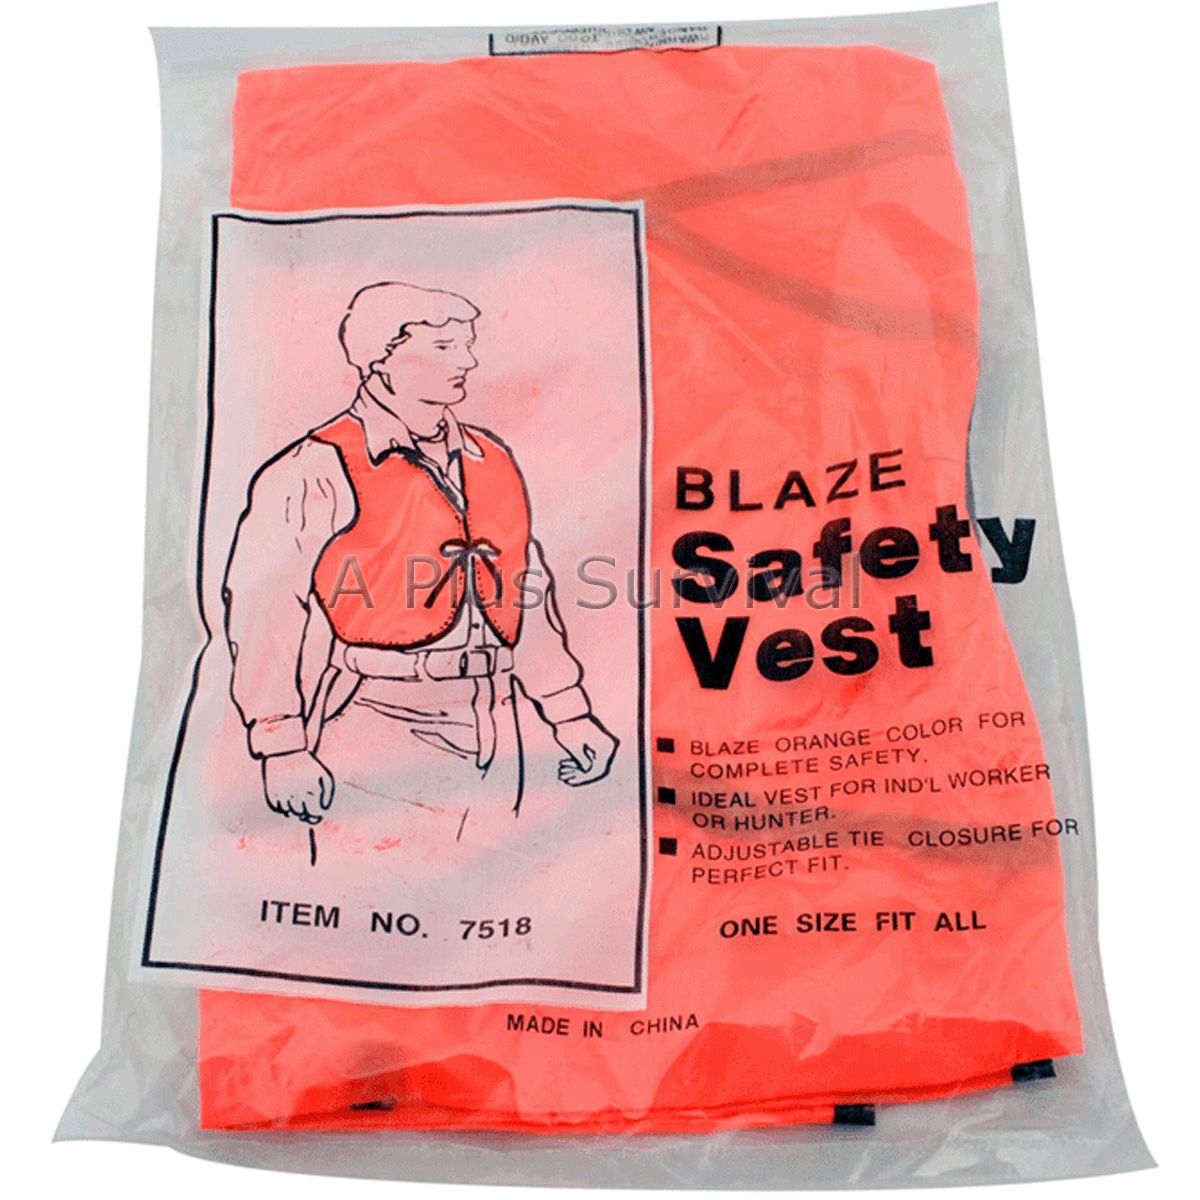 Emergency Safety Vest Bright Orange